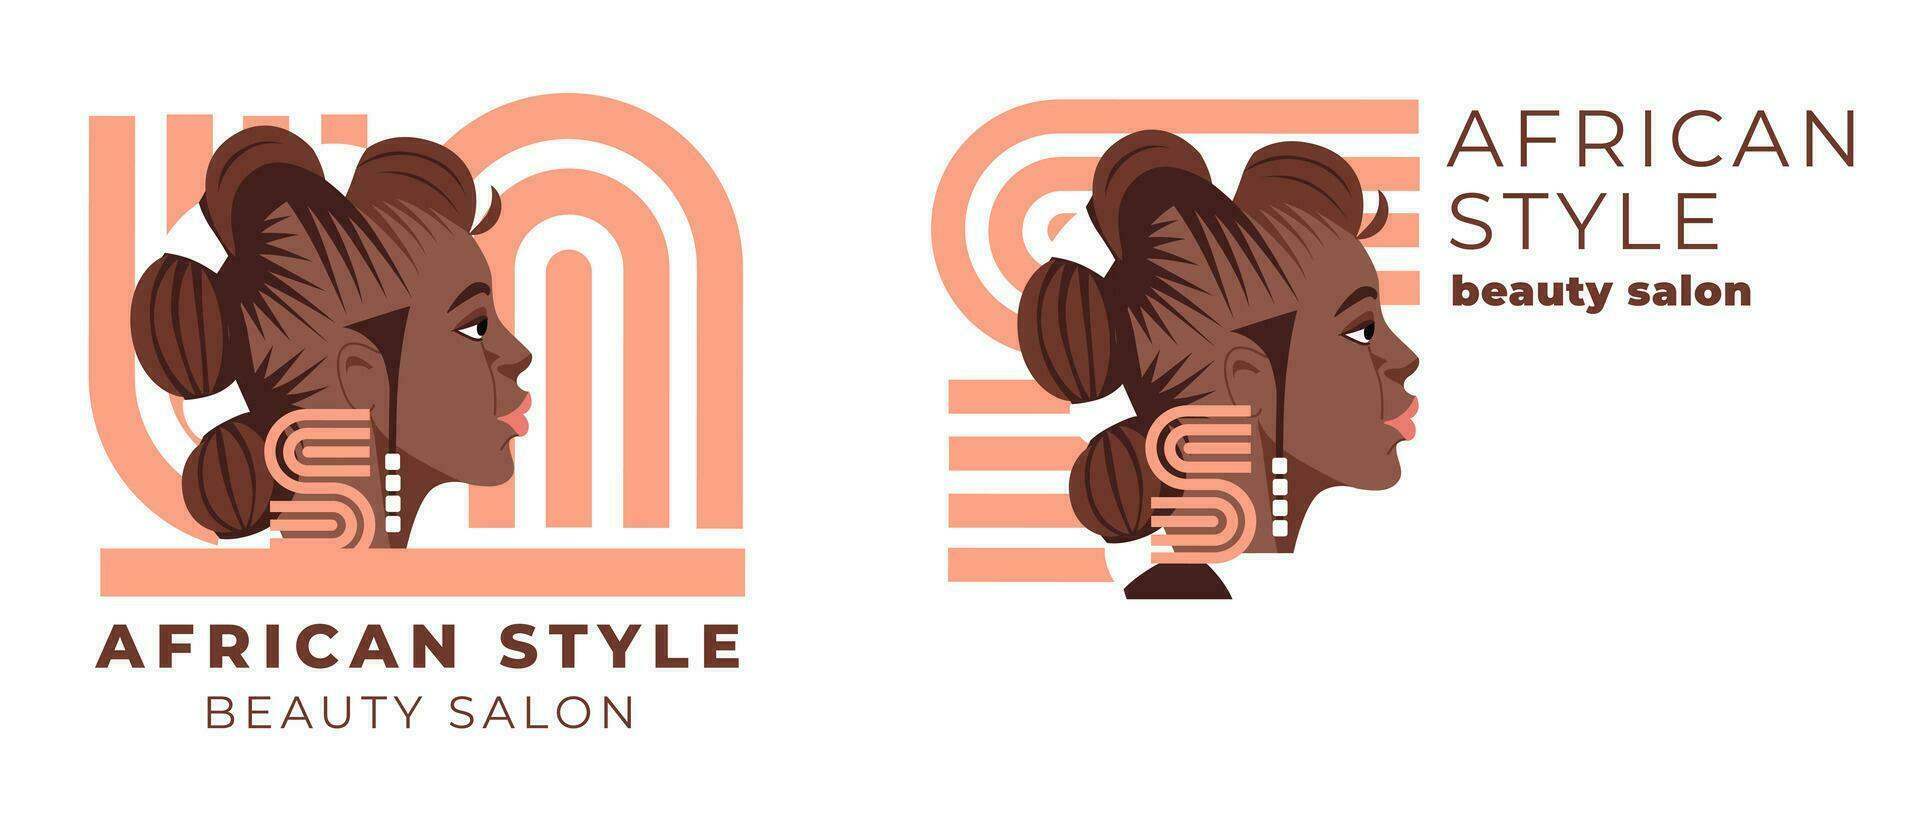 beauté salon logo et identité. plat vecteur illustration de noir femmes affronter. génial pour avatars, beauté les salons, traditionnel frisé coiffures de africain américain femmes.